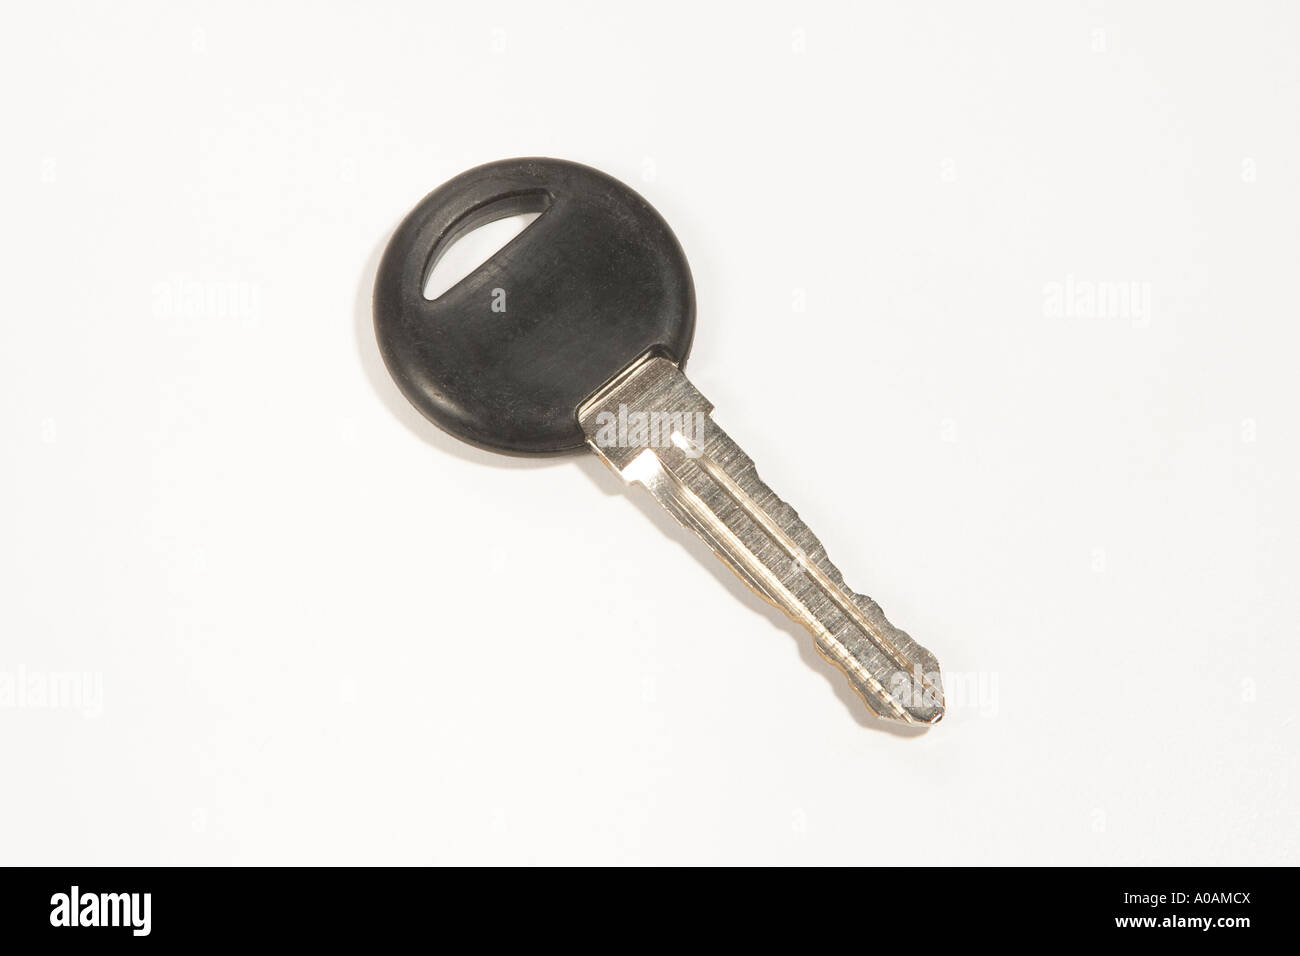 Car key on white background Stock Photo